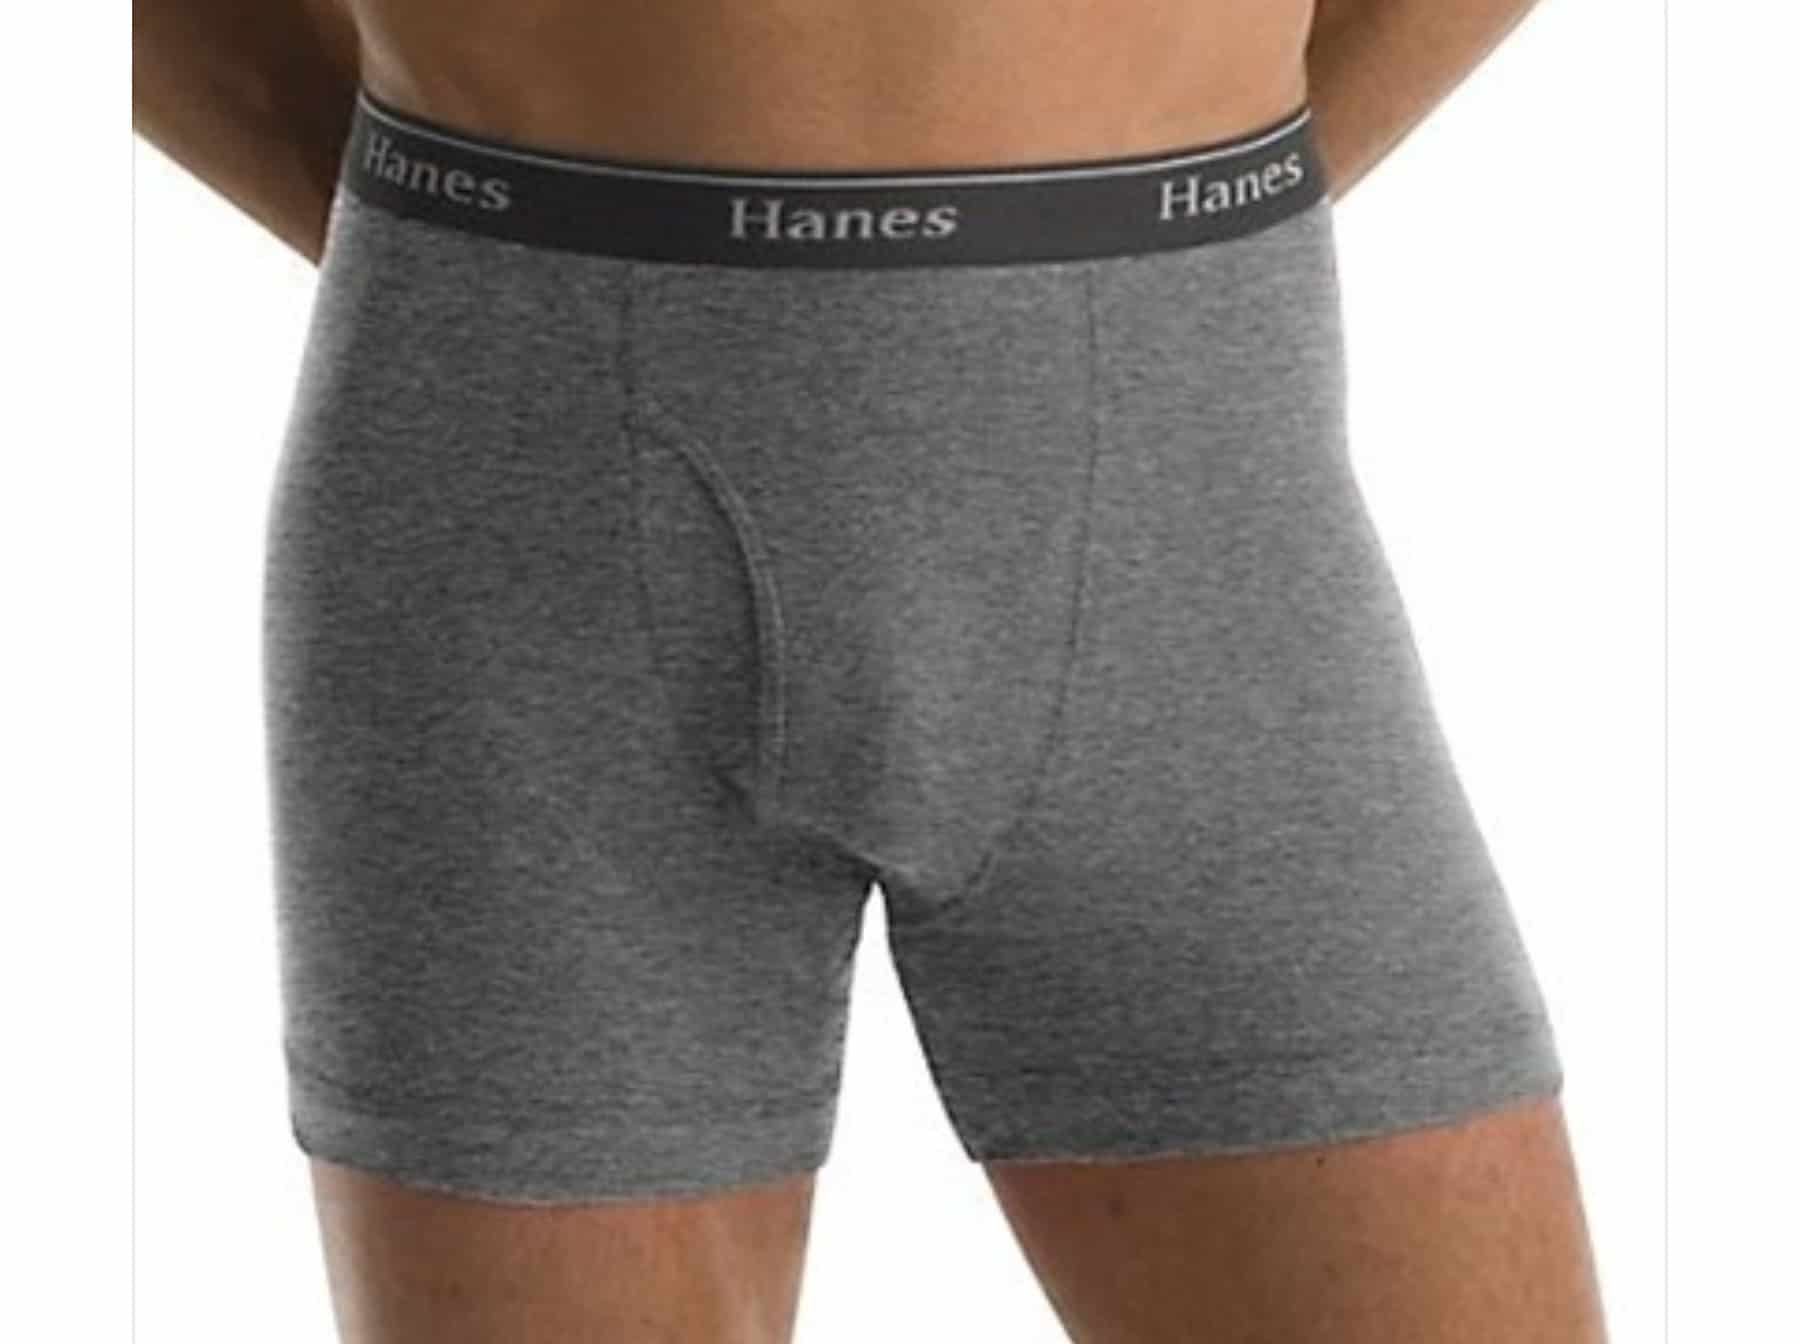 Hanes - underwear brand for men